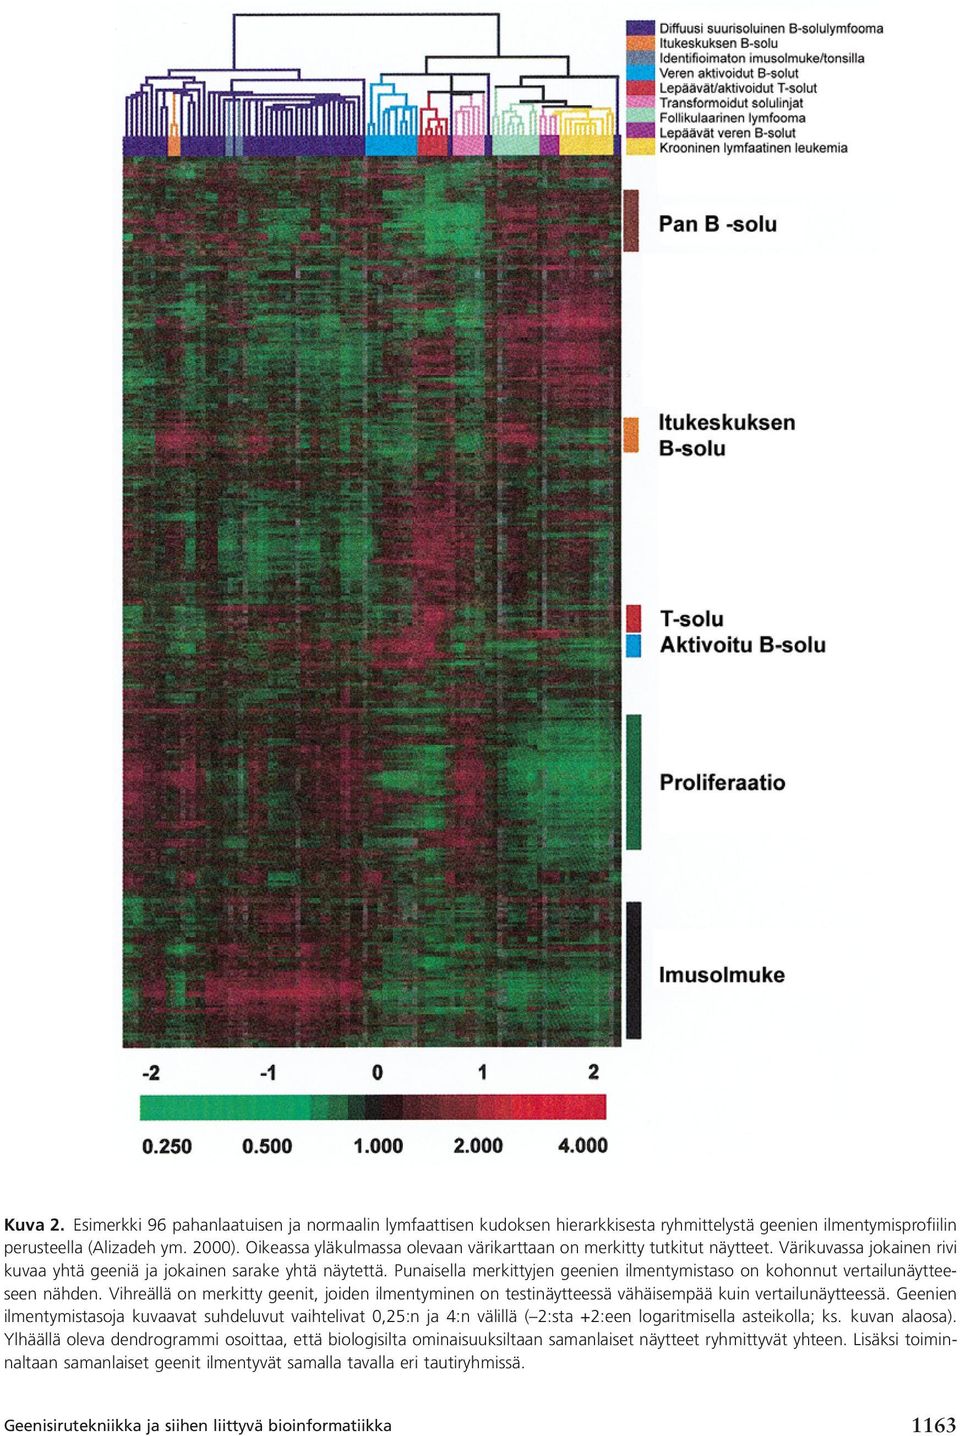 Punaisella merkittyjen geenien ilmentymistaso on kohonnut vertailunäytteeseen nähden. Vihreällä on merkitty geenit, joiden ilmentyminen on testinäytteessä vähäisempää kuin vertailunäytteessä.